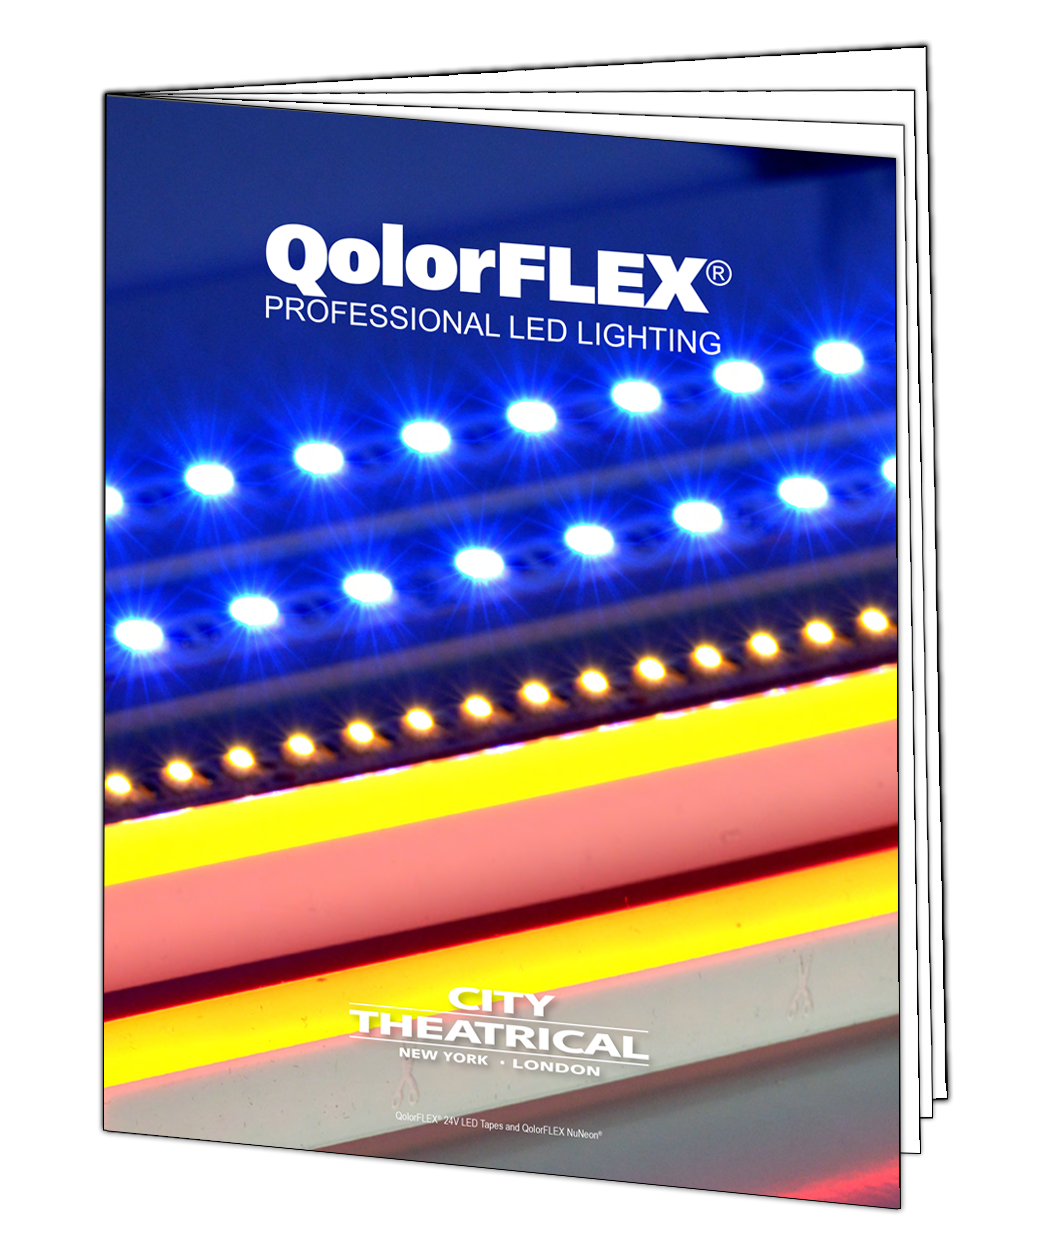 QolorFLEX Brochure